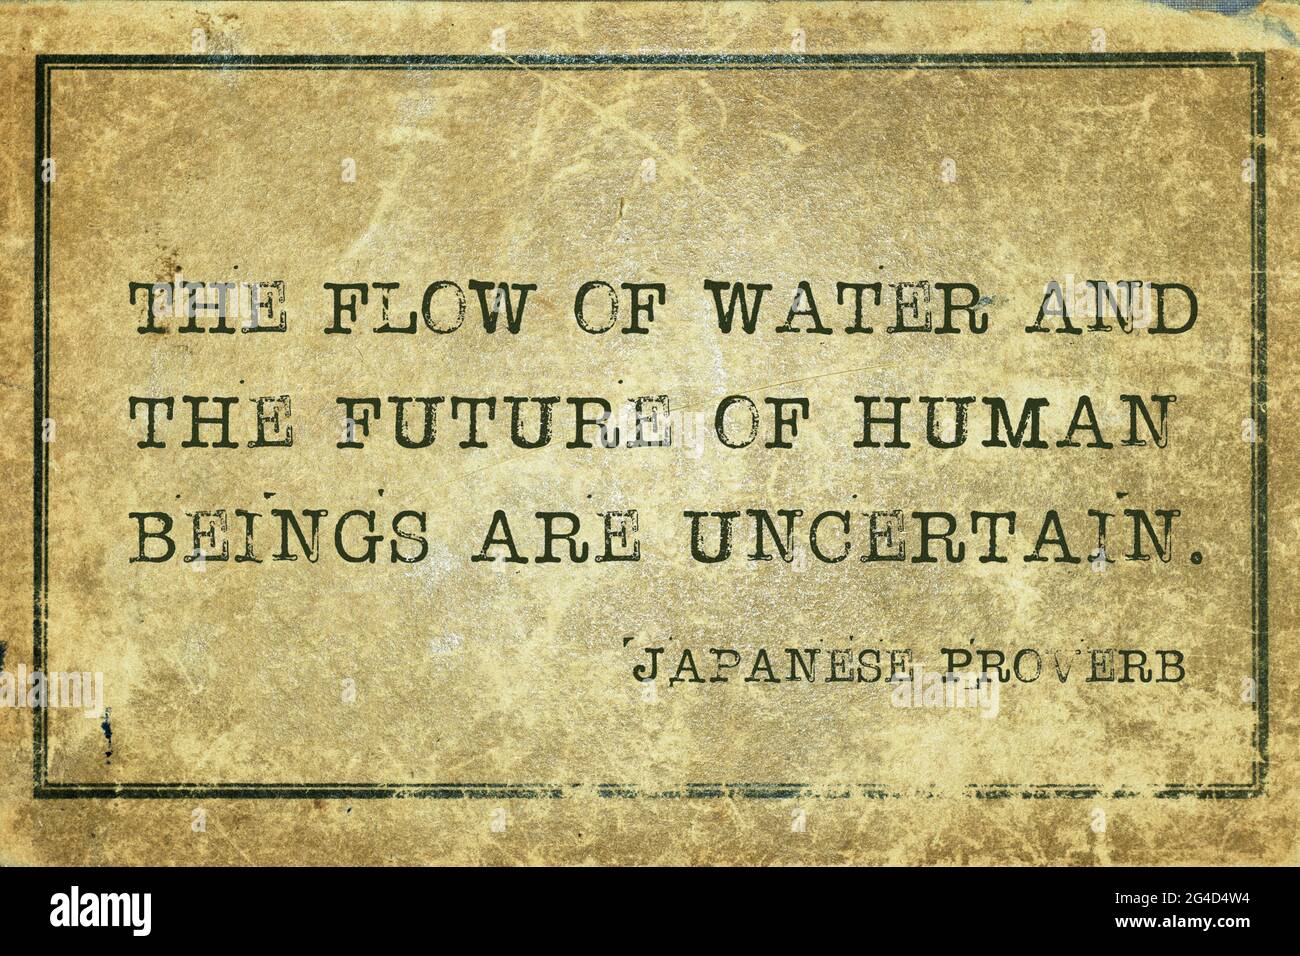 El flujo de agua y el futuro de los seres humanos son inciertos - antiguo proverbio japonés impreso en grunge vintage cardboardfuture, humano, Foto de stock